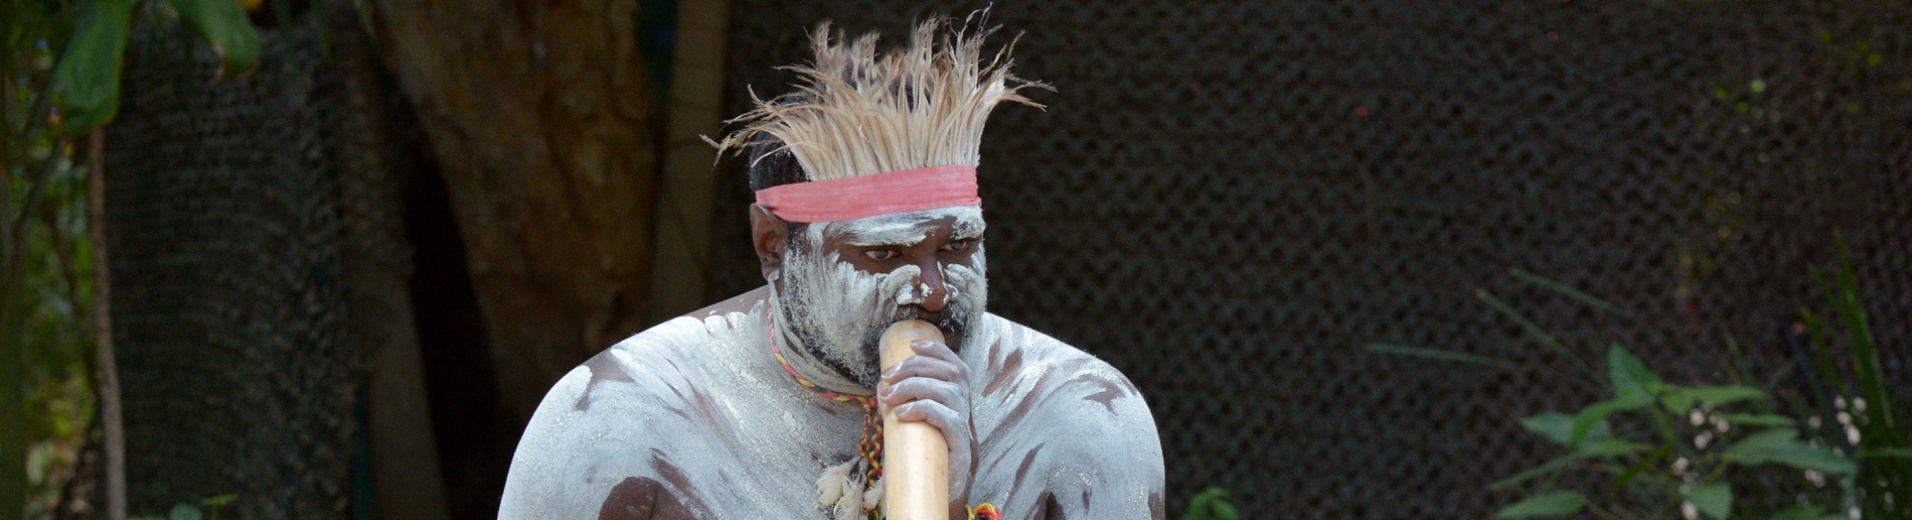 Portrait d'un aborigène jouant du didgeridoo Australie